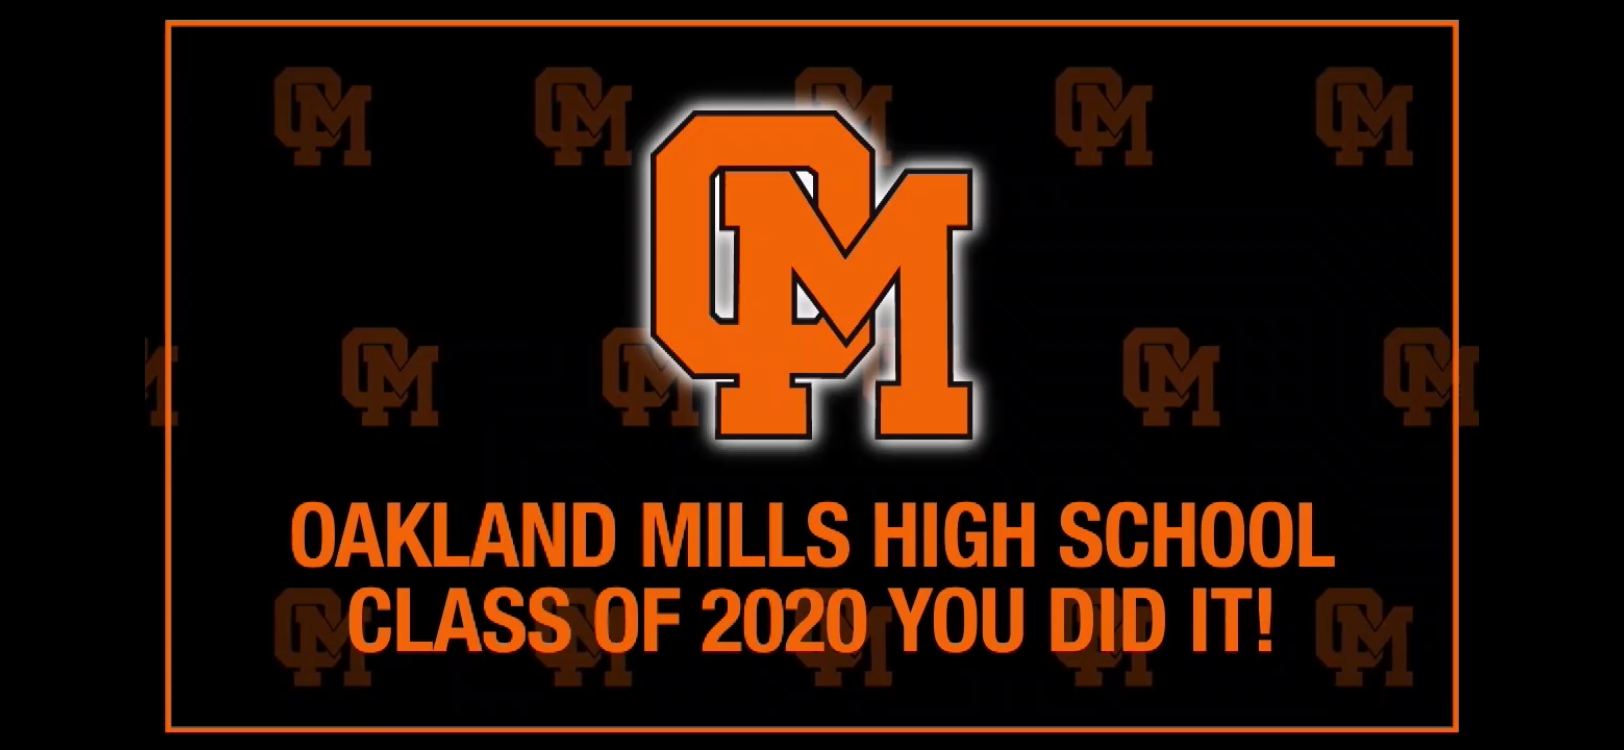 Oakland Mills High School Class of 2020 Home